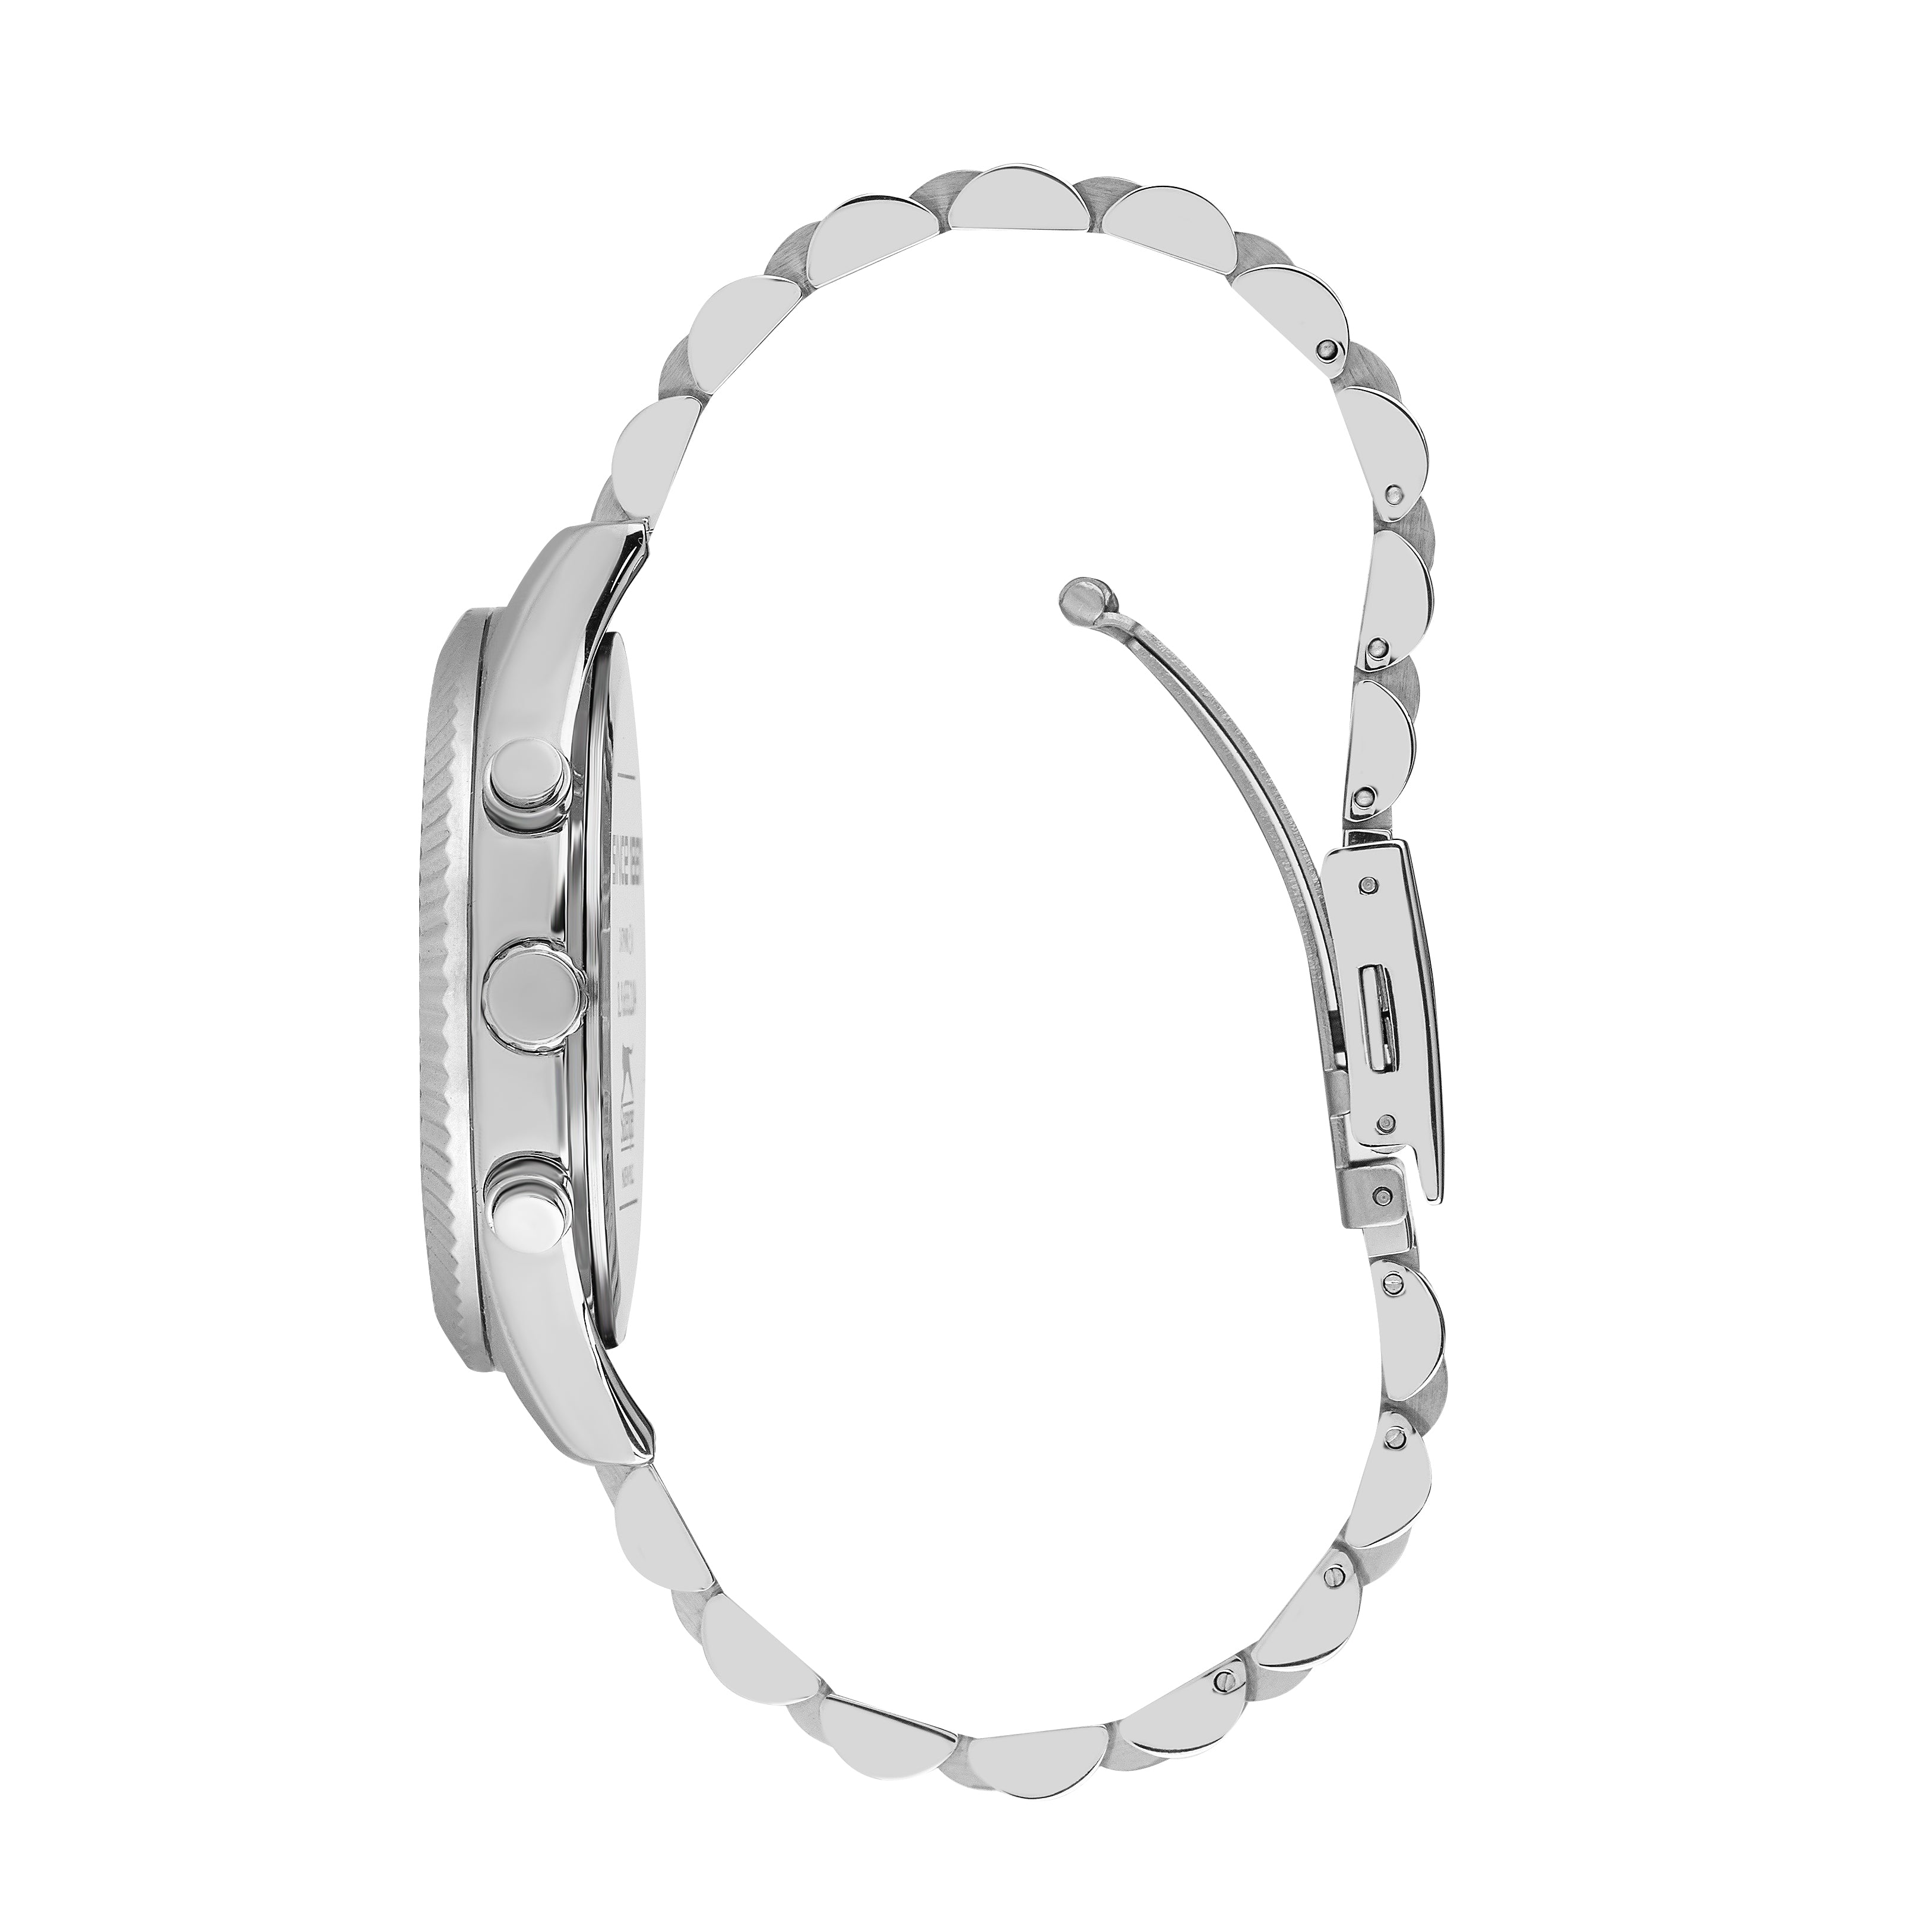 Slazenger - SL.9.6555.2.03 - Stainless Steel Watch For Men